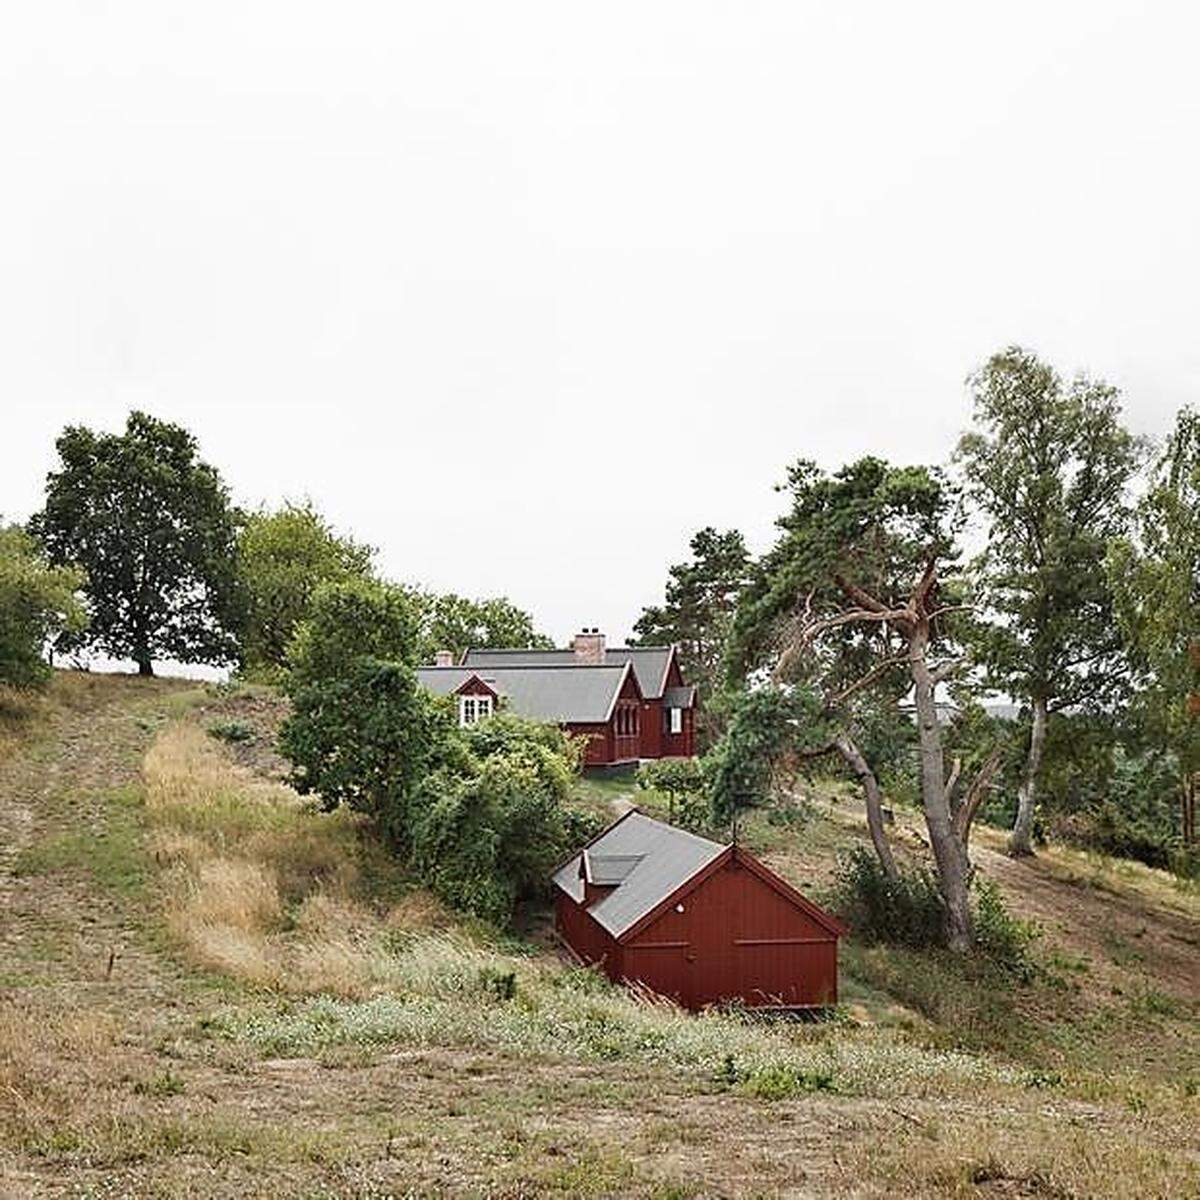 Bakkedraget Landhaus in Dänemark, Johansen Skovsted Arkitekter in Zusammenarbeit mit LASC Studio.